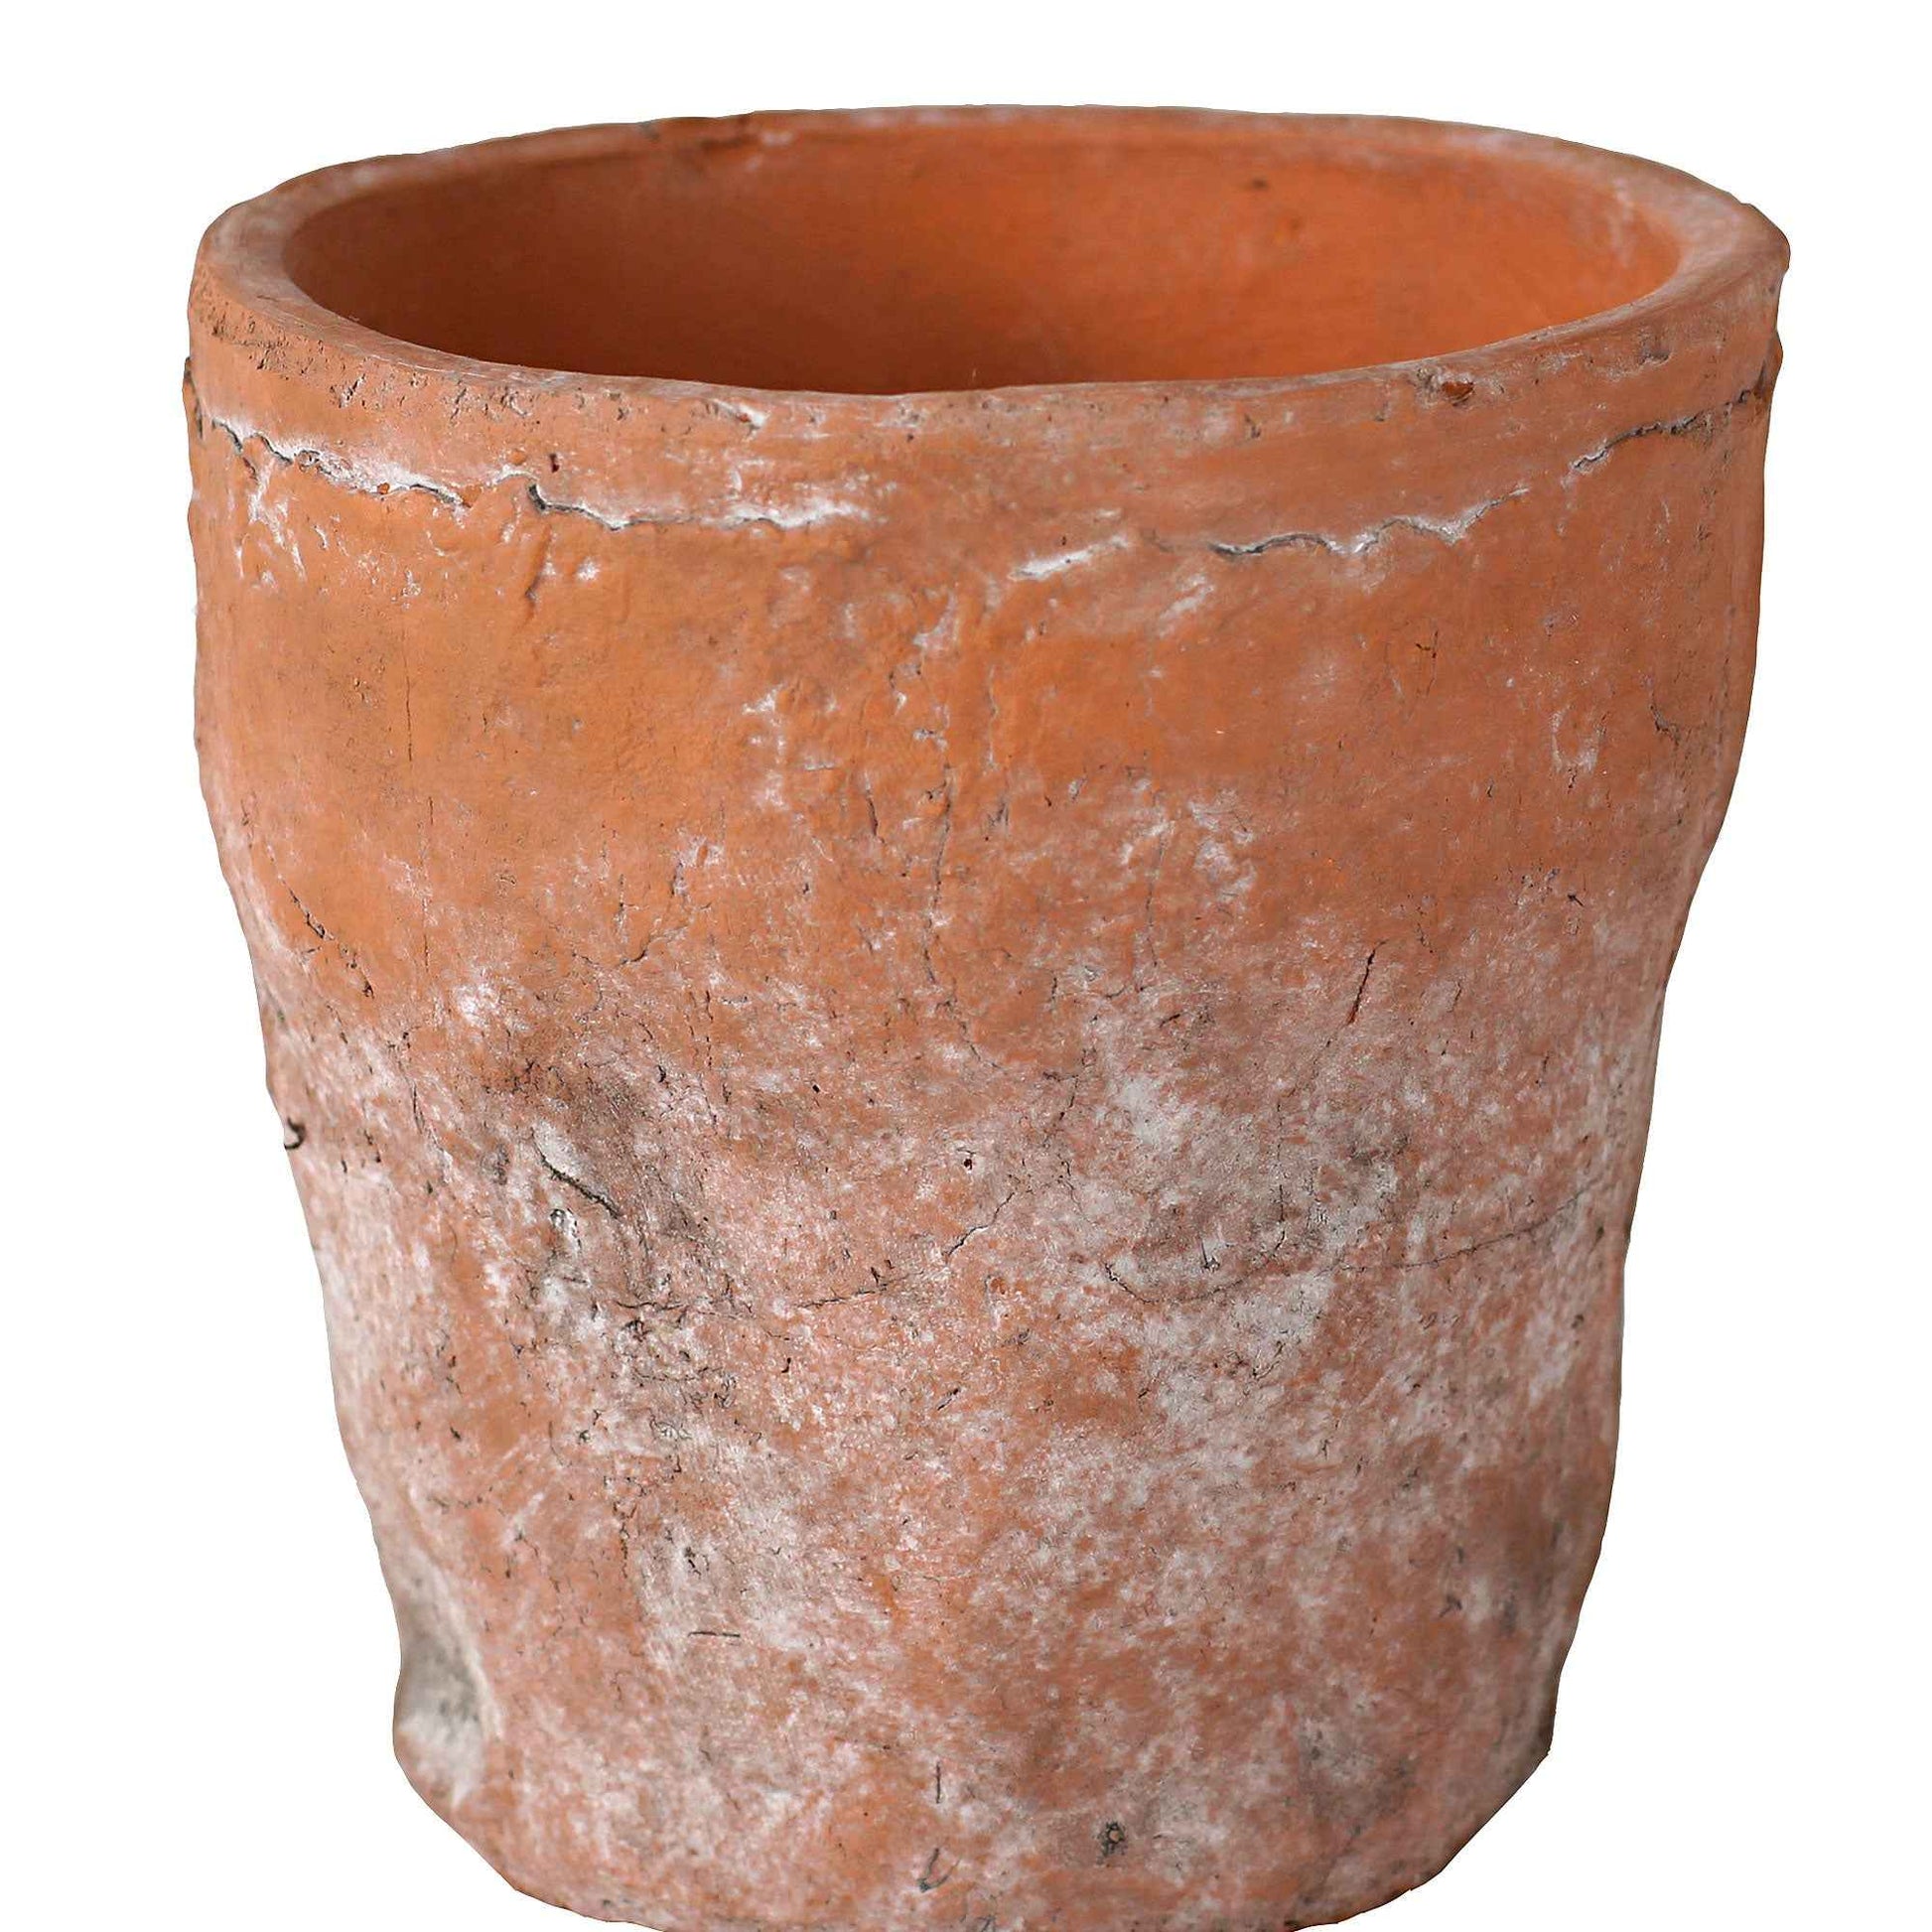 TS pot de fleurs Nature rond terre cuite - Pot pour l'intérieur - Petits pots d'intérieur